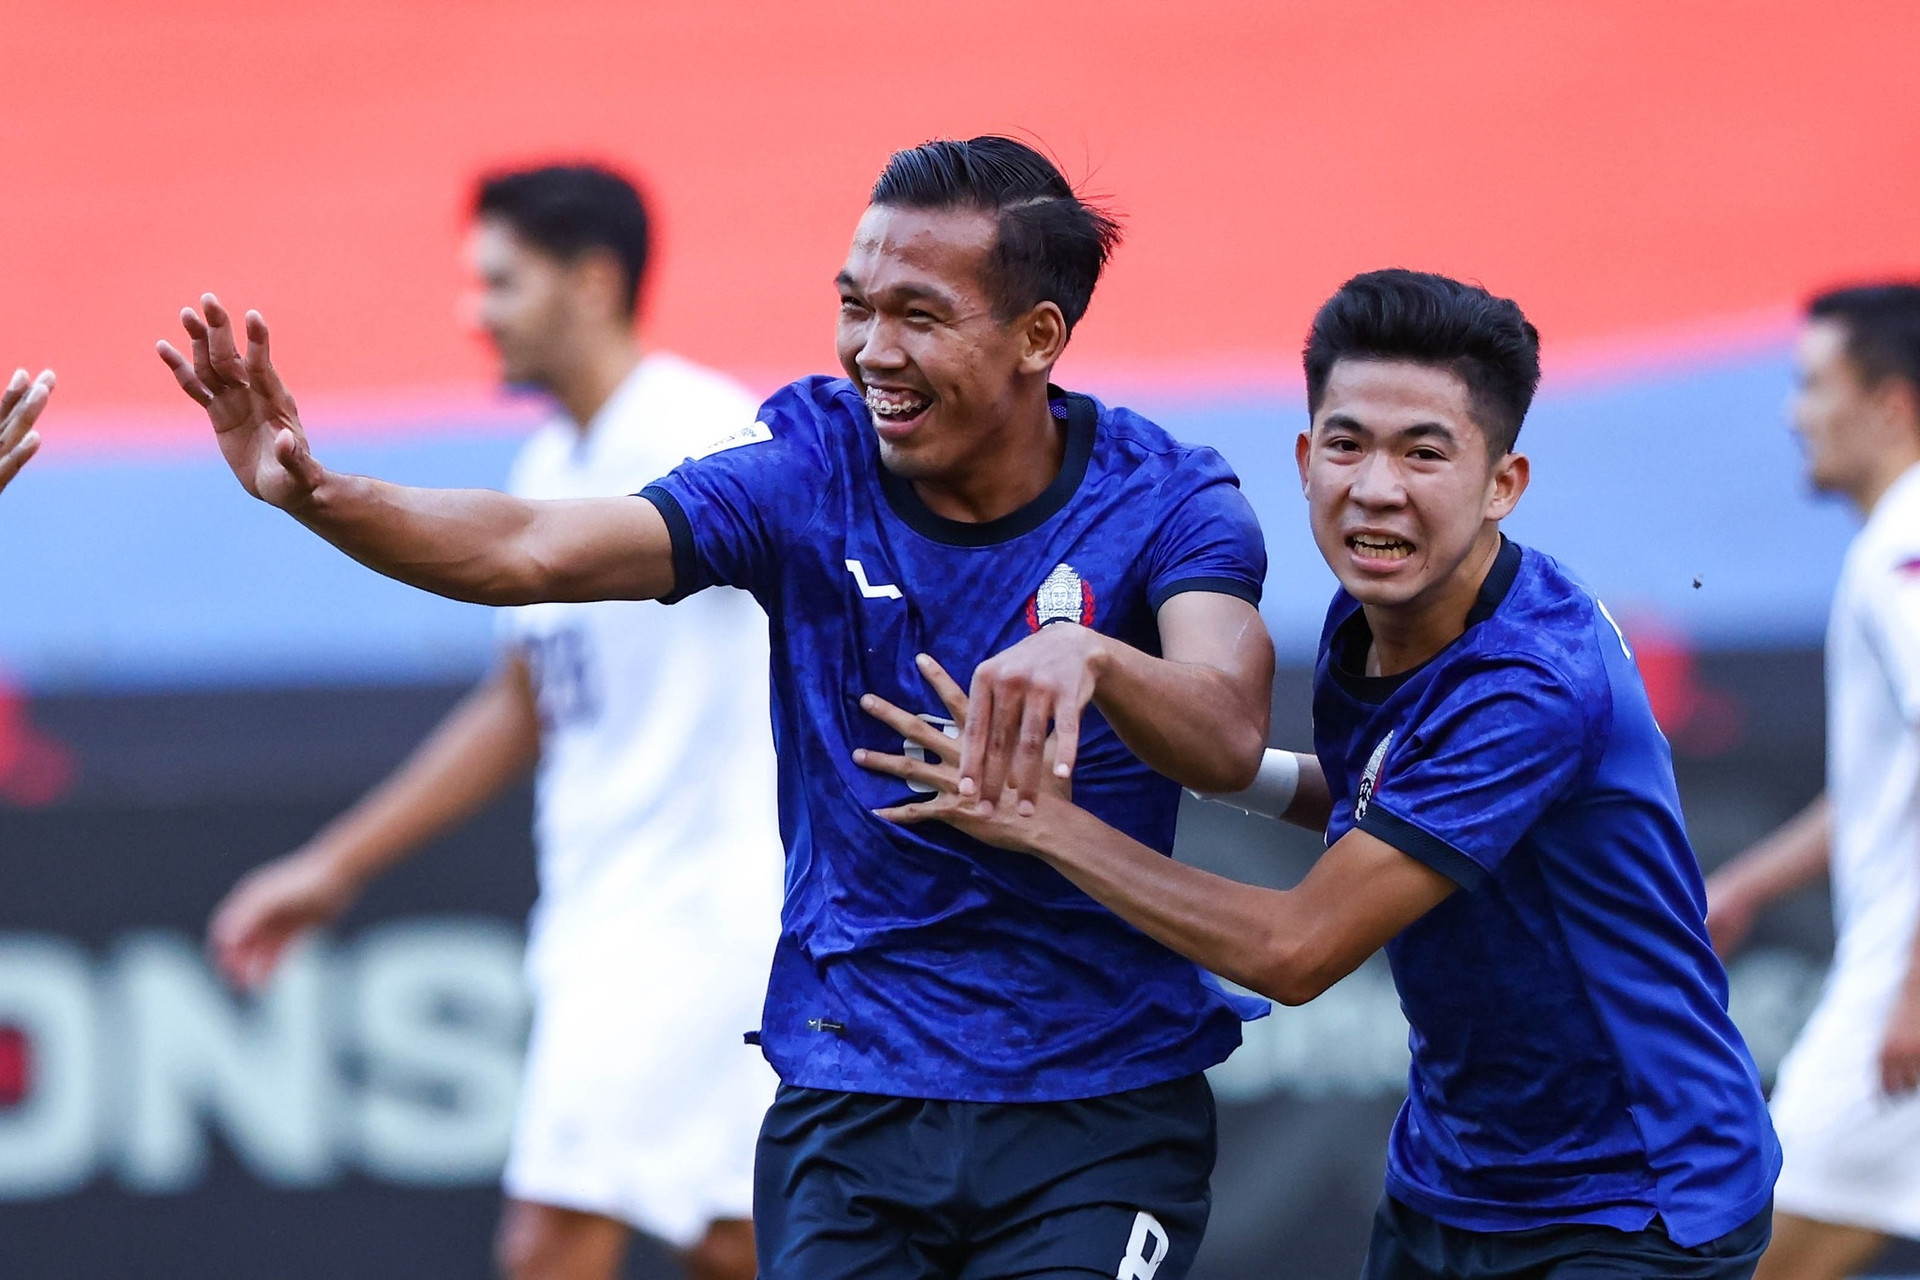 Campuchia gây bất ngờ, đánh bại Philippines ở ngày khai mạc AFF Cup - 2